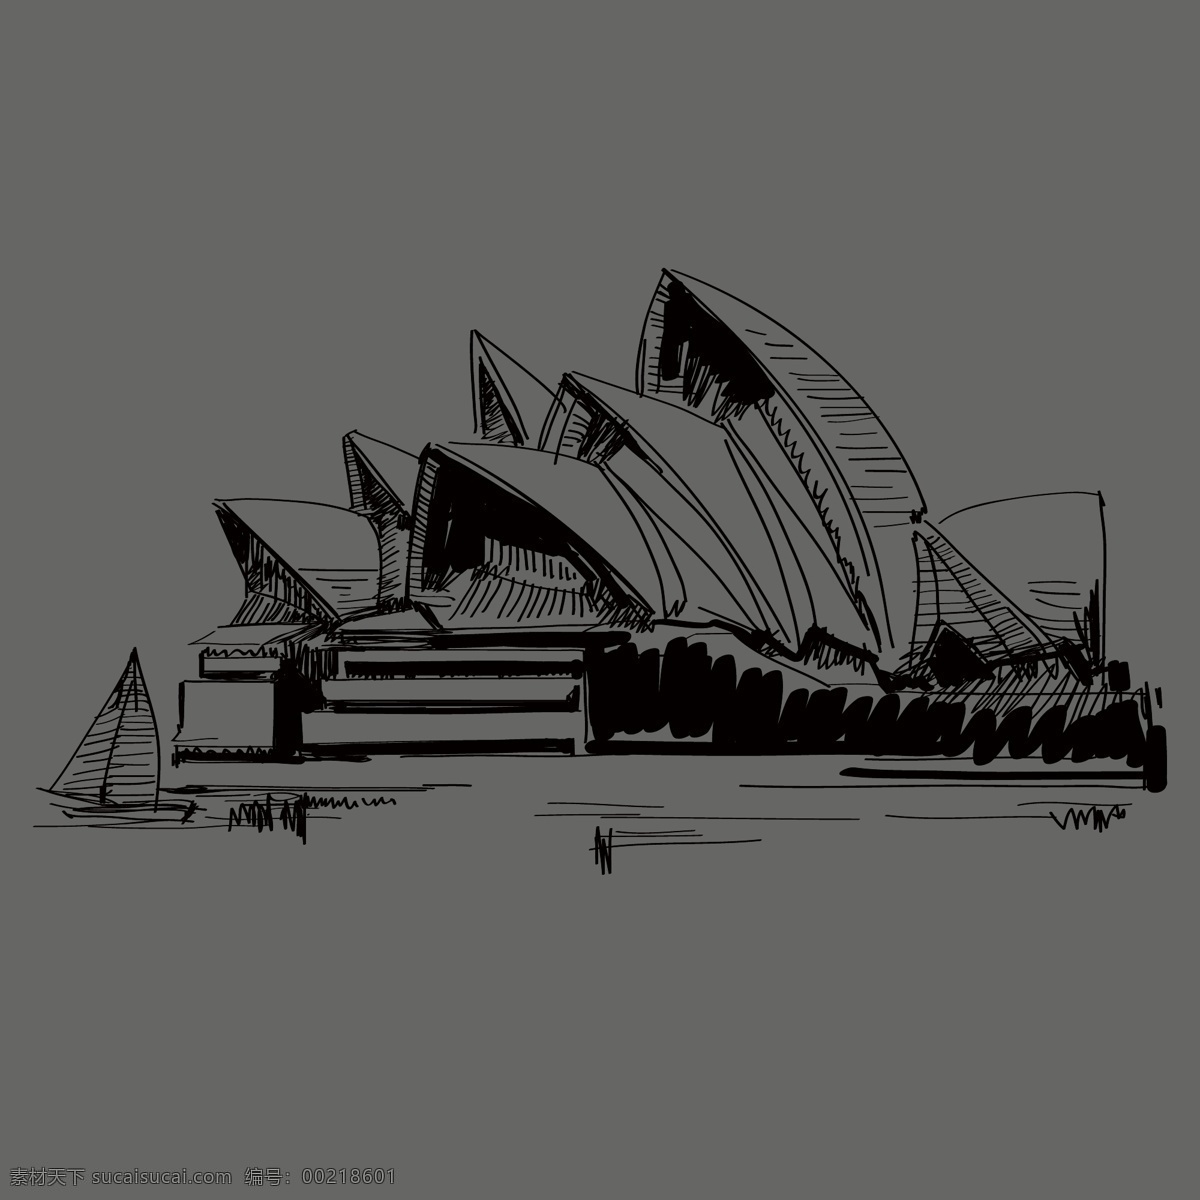 印花 矢量图 t恤图案 服装图案 建筑 欧式建筑 印花矢量图 悉尼大剧院 面料图库 服装设计 图案花型